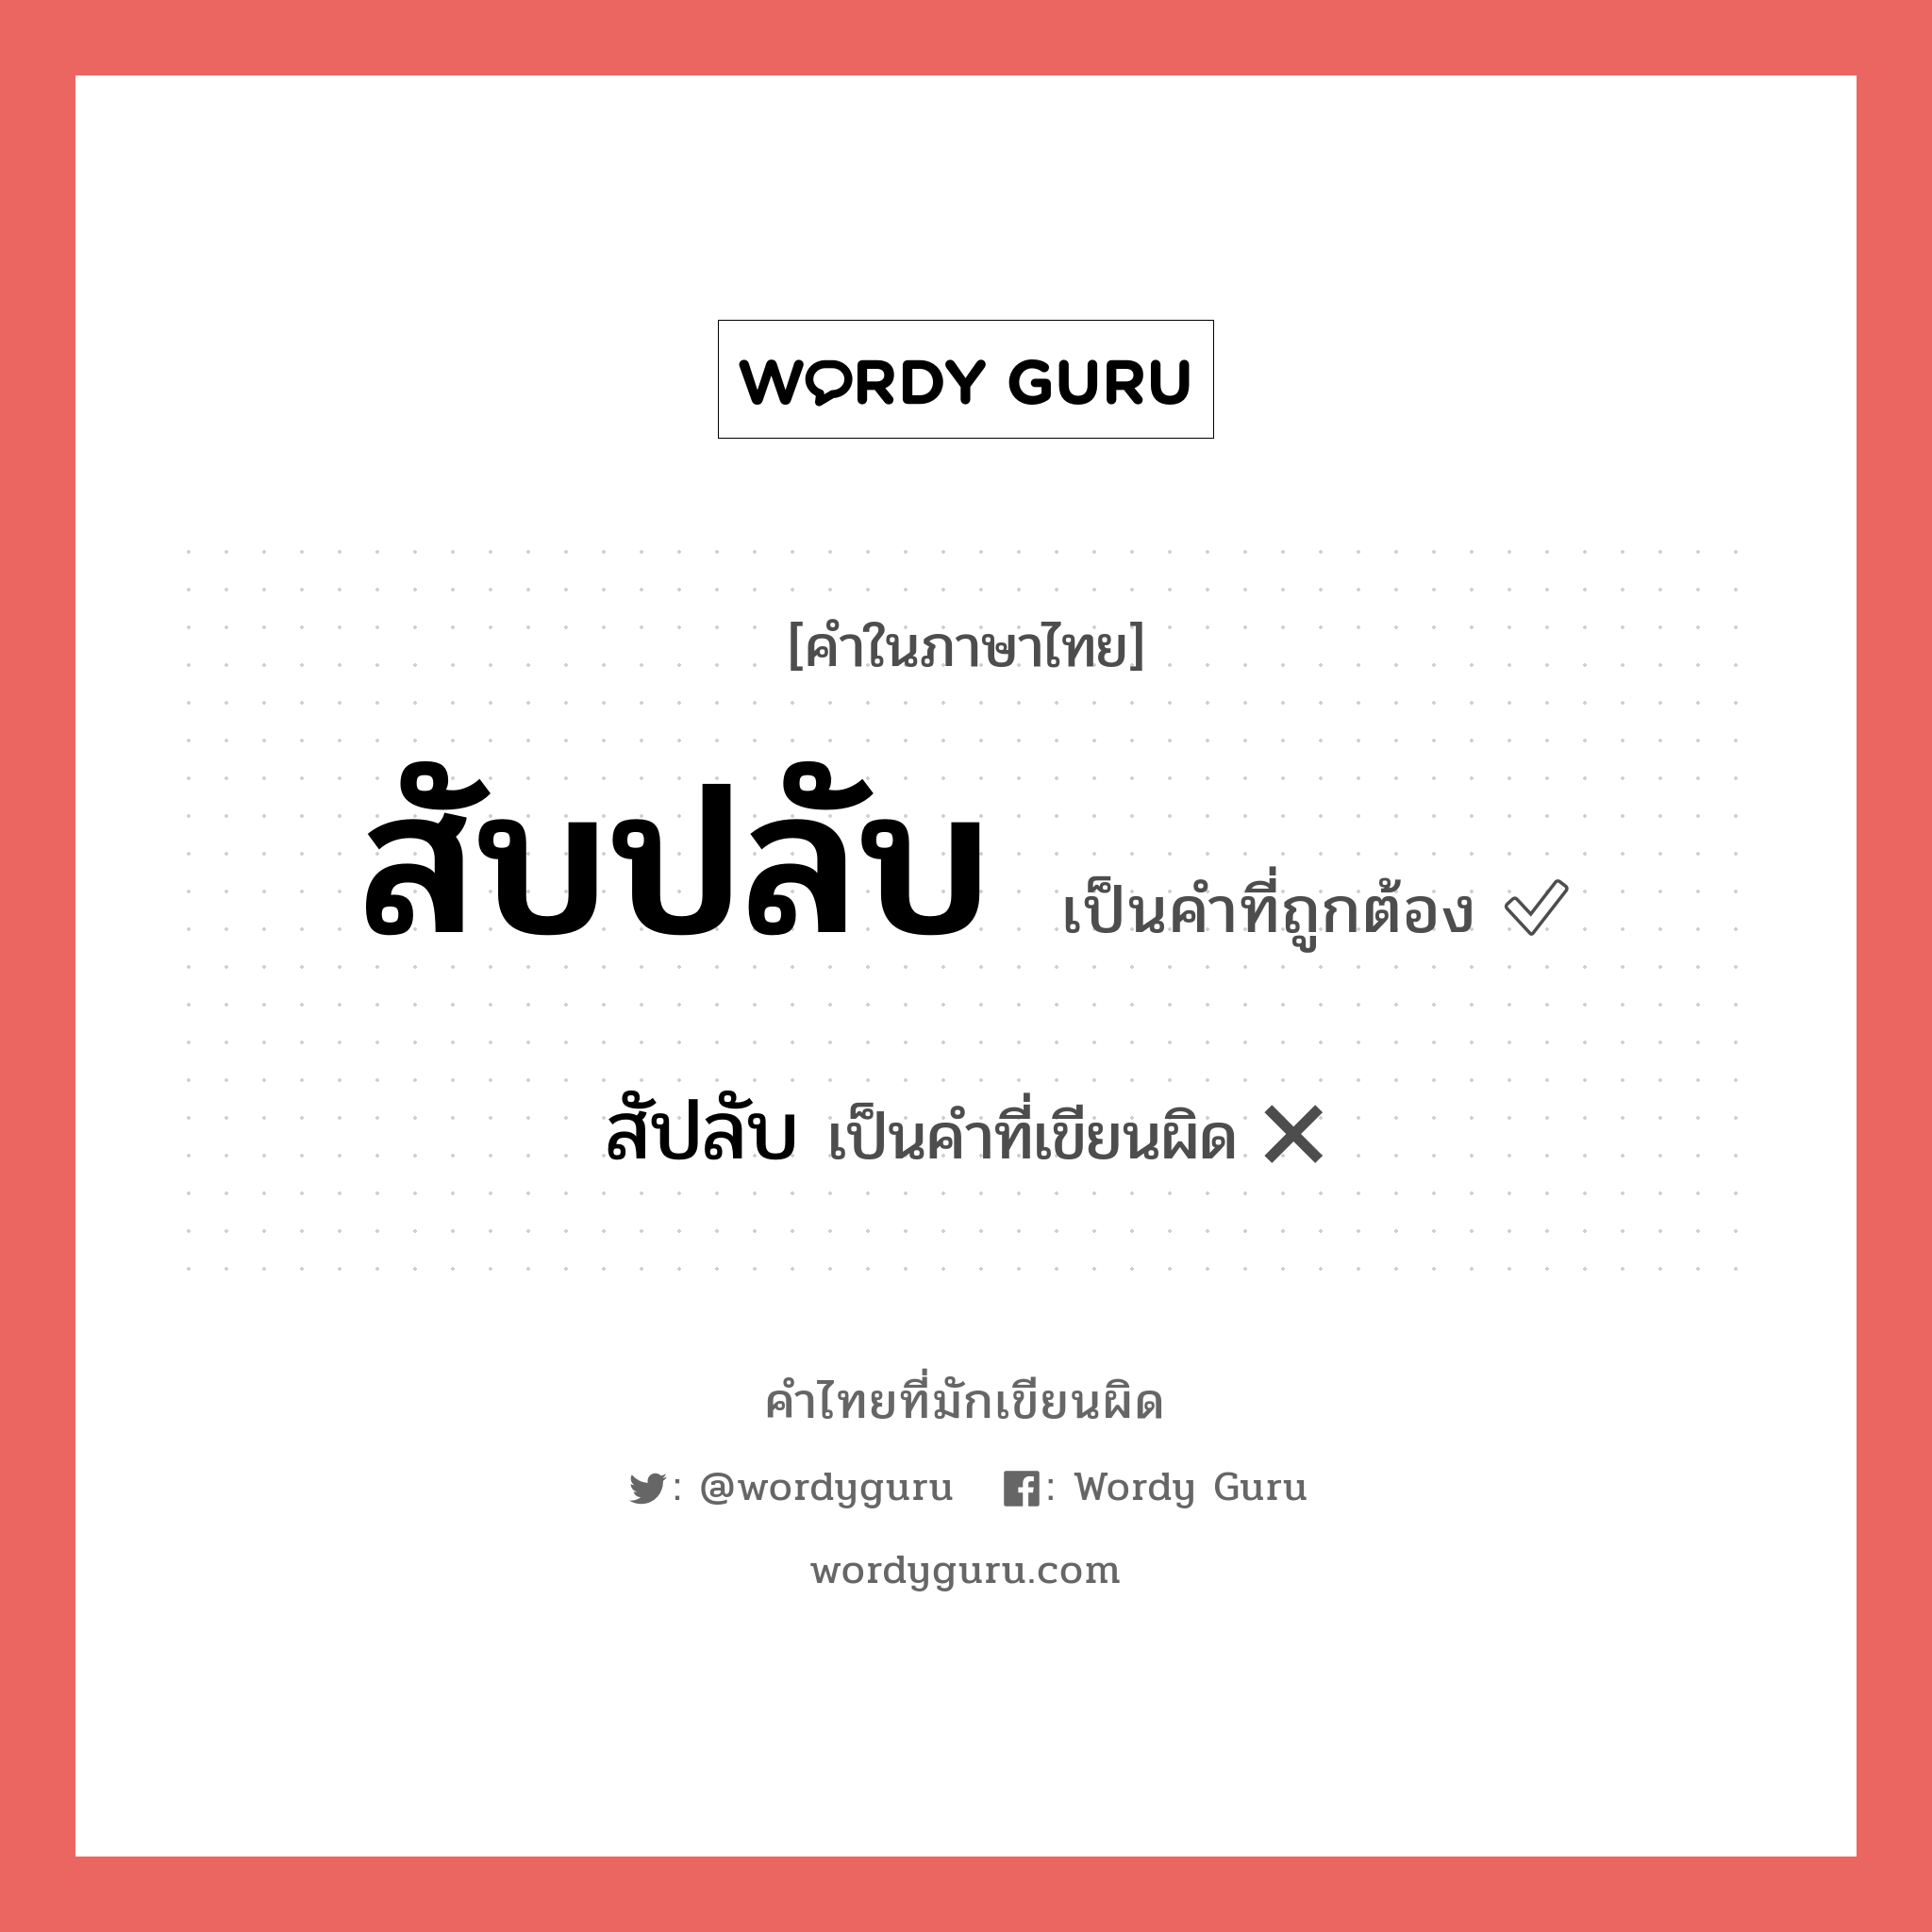 สัปลับ หรือ สับปลับ คำไหนเขียนถูก?, คำในภาษาไทยที่มักเขียนผิด สัปลับ คำที่ผิด ❌ สับปลับ